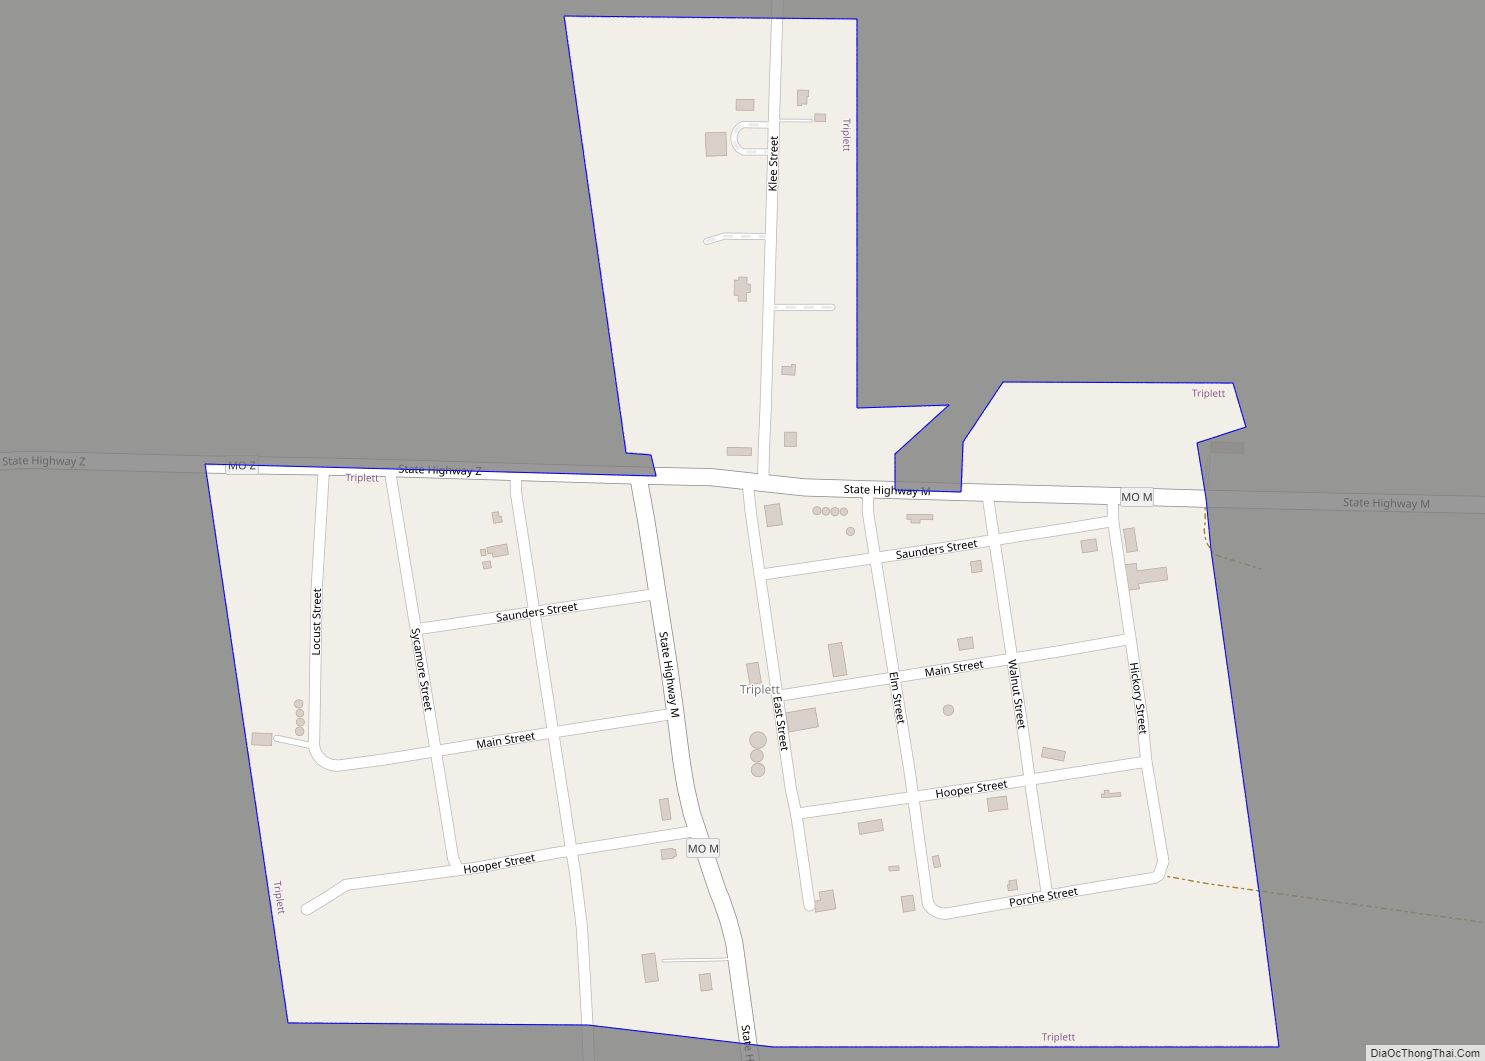 Map of Triplett city